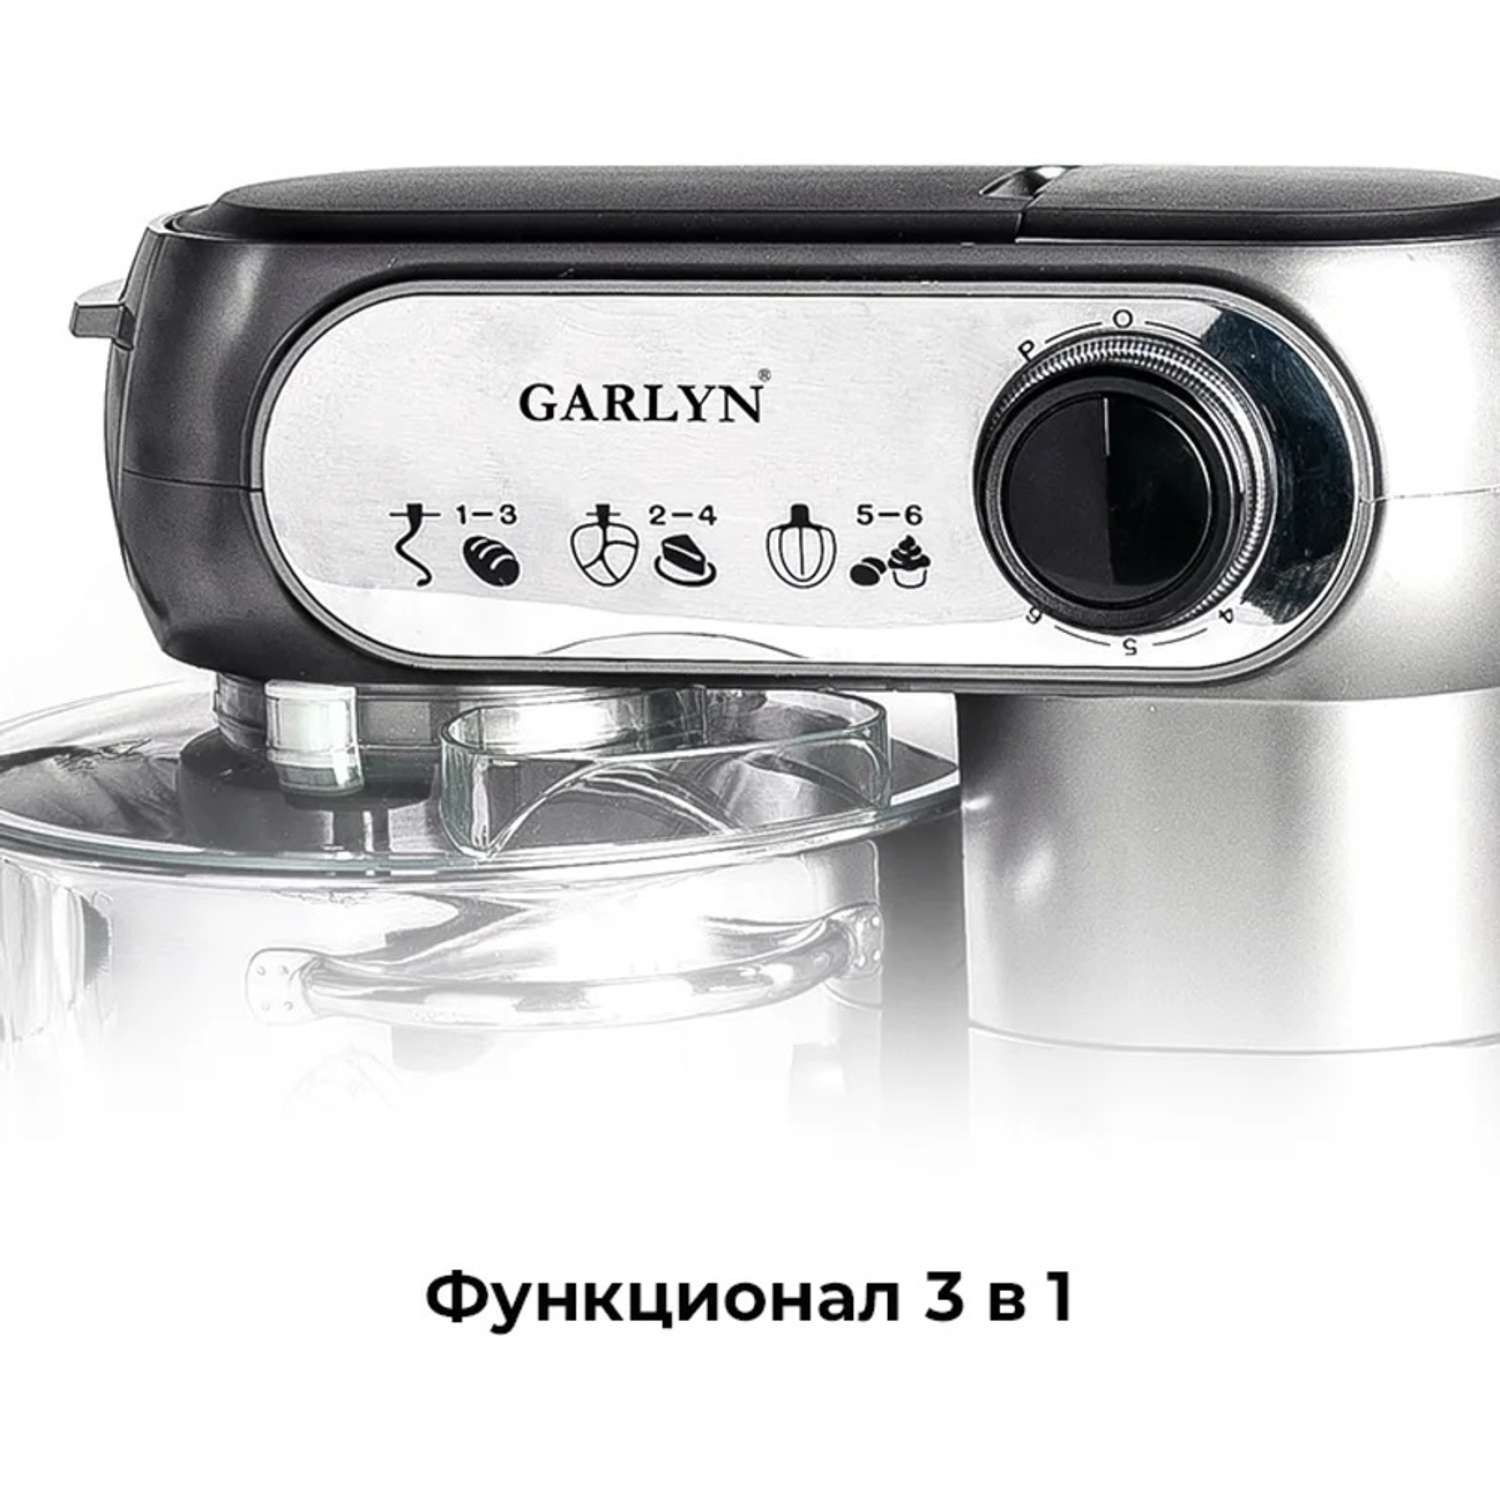 Кухонная машина GARLYN S-350 - фото 4